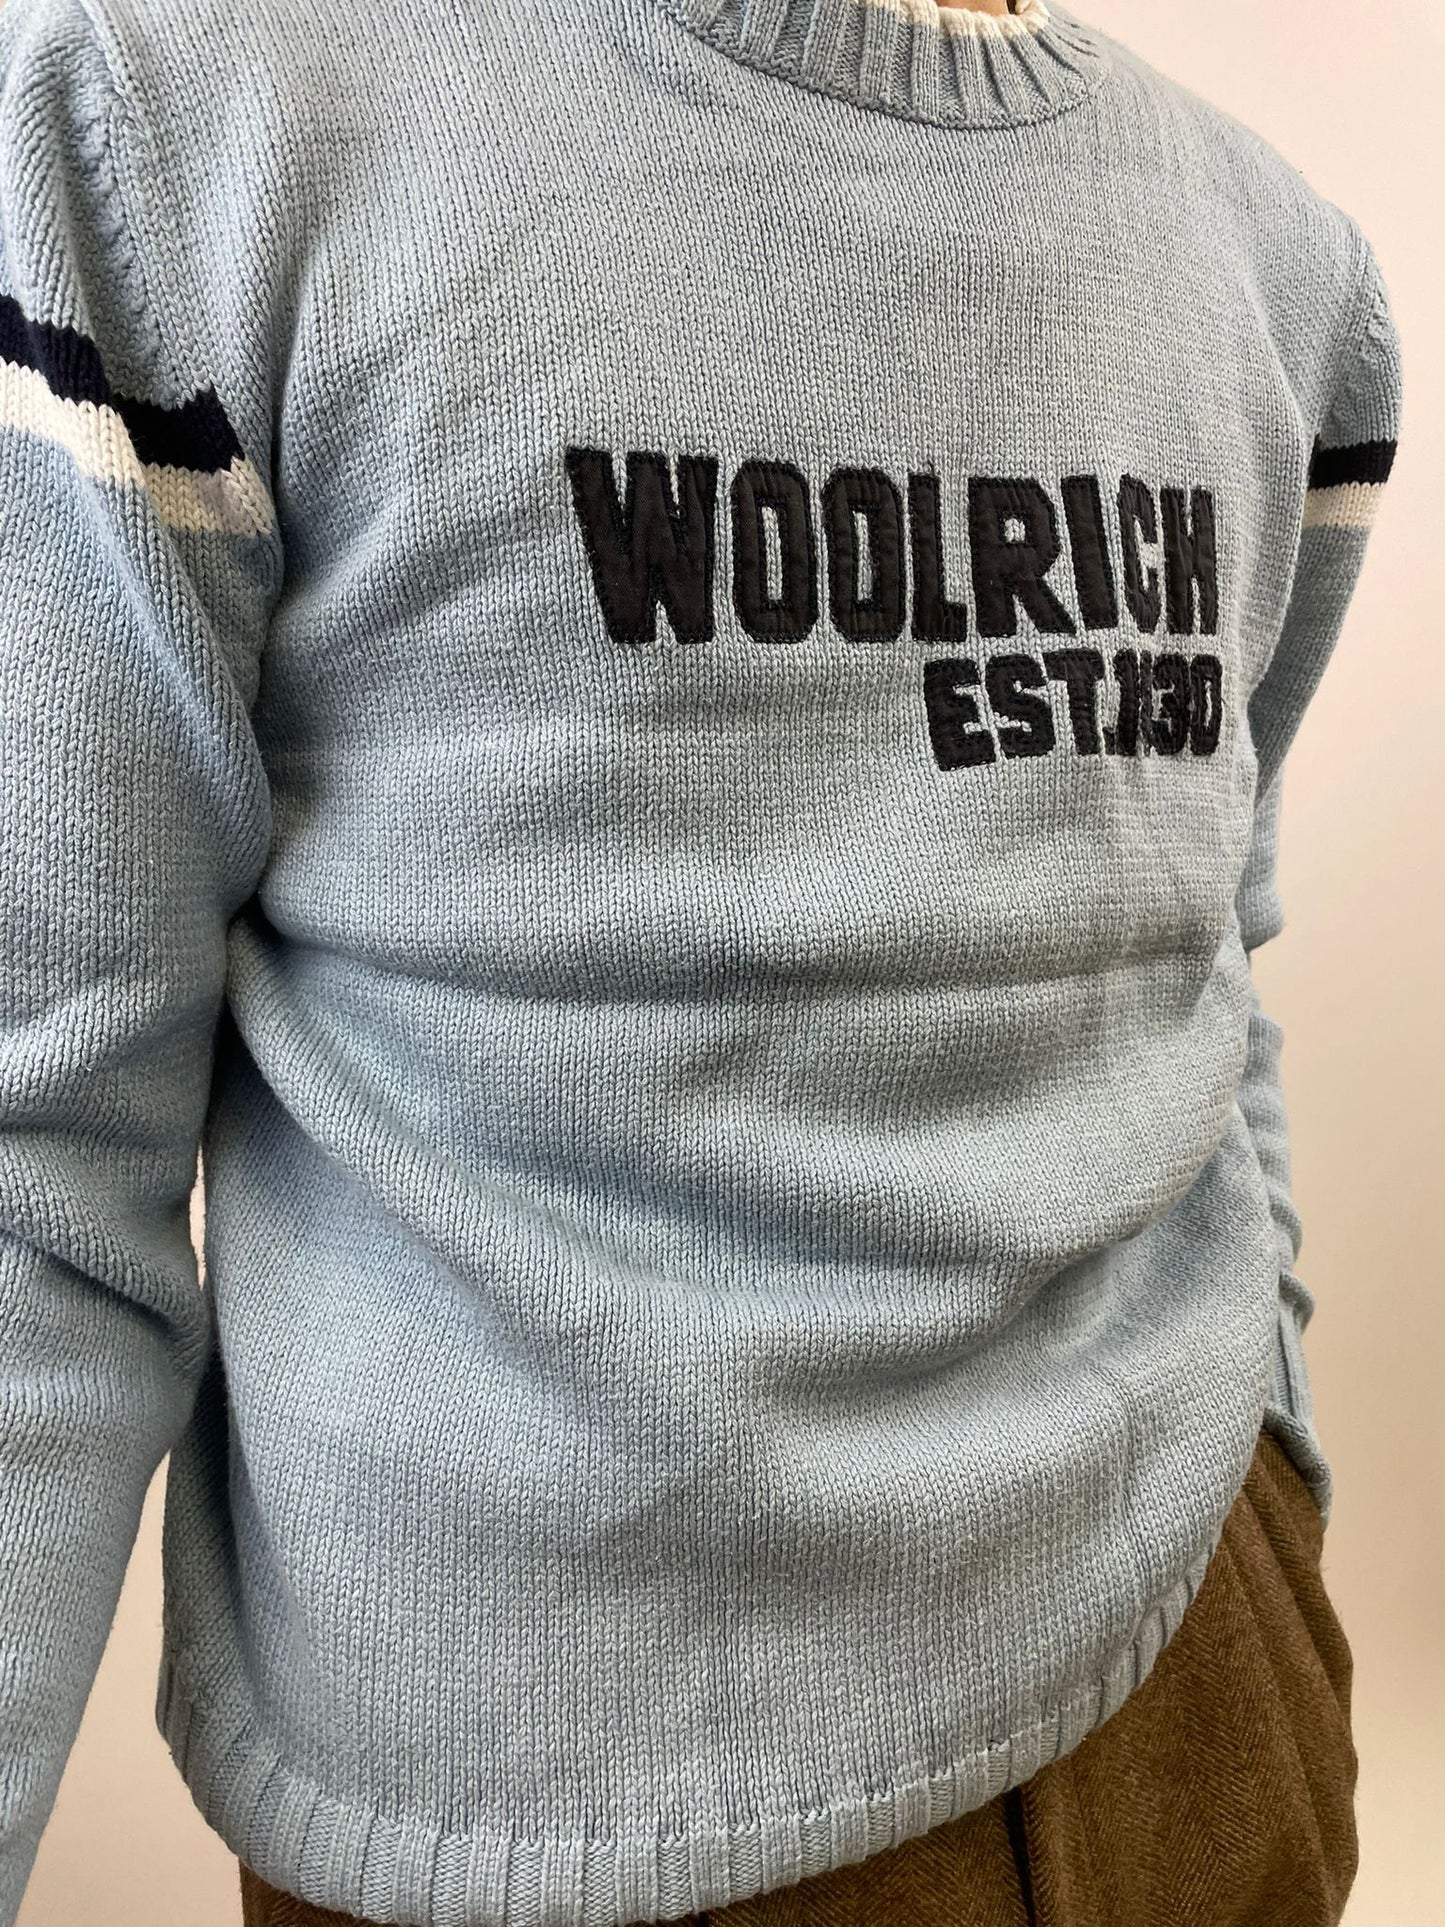 WOOLRICH sweater